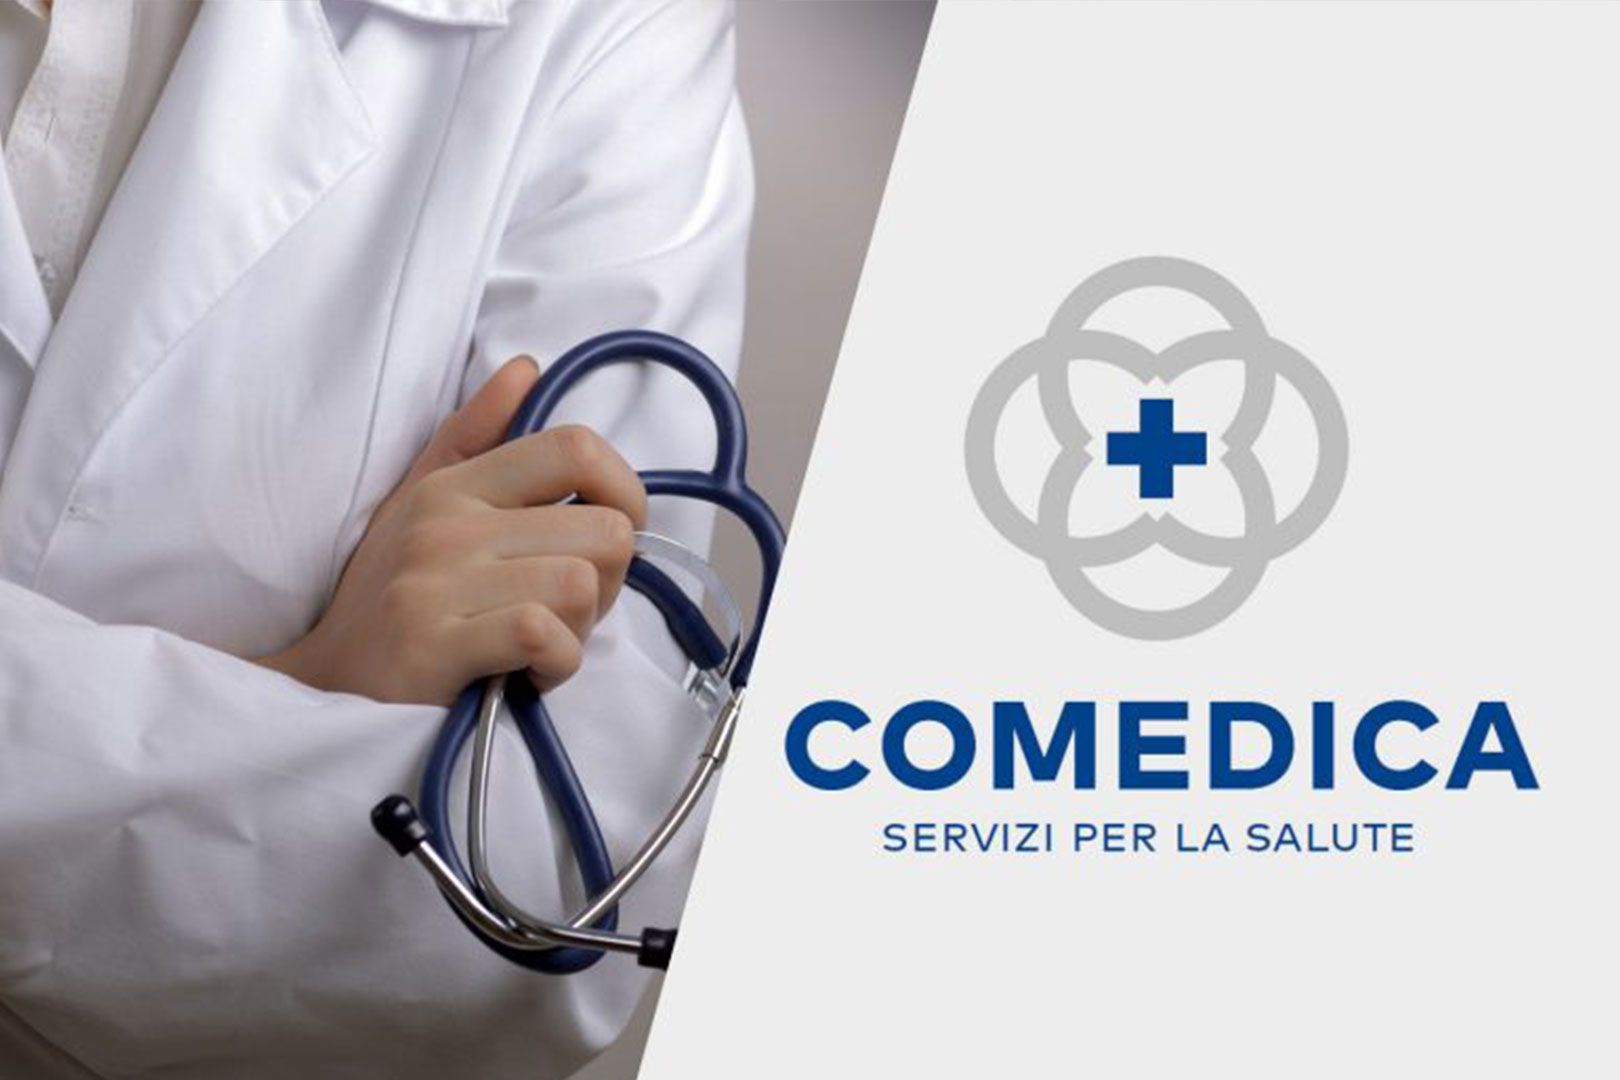 Scopri Comedica centro medico polispecialistico e diagnostico in Umbria